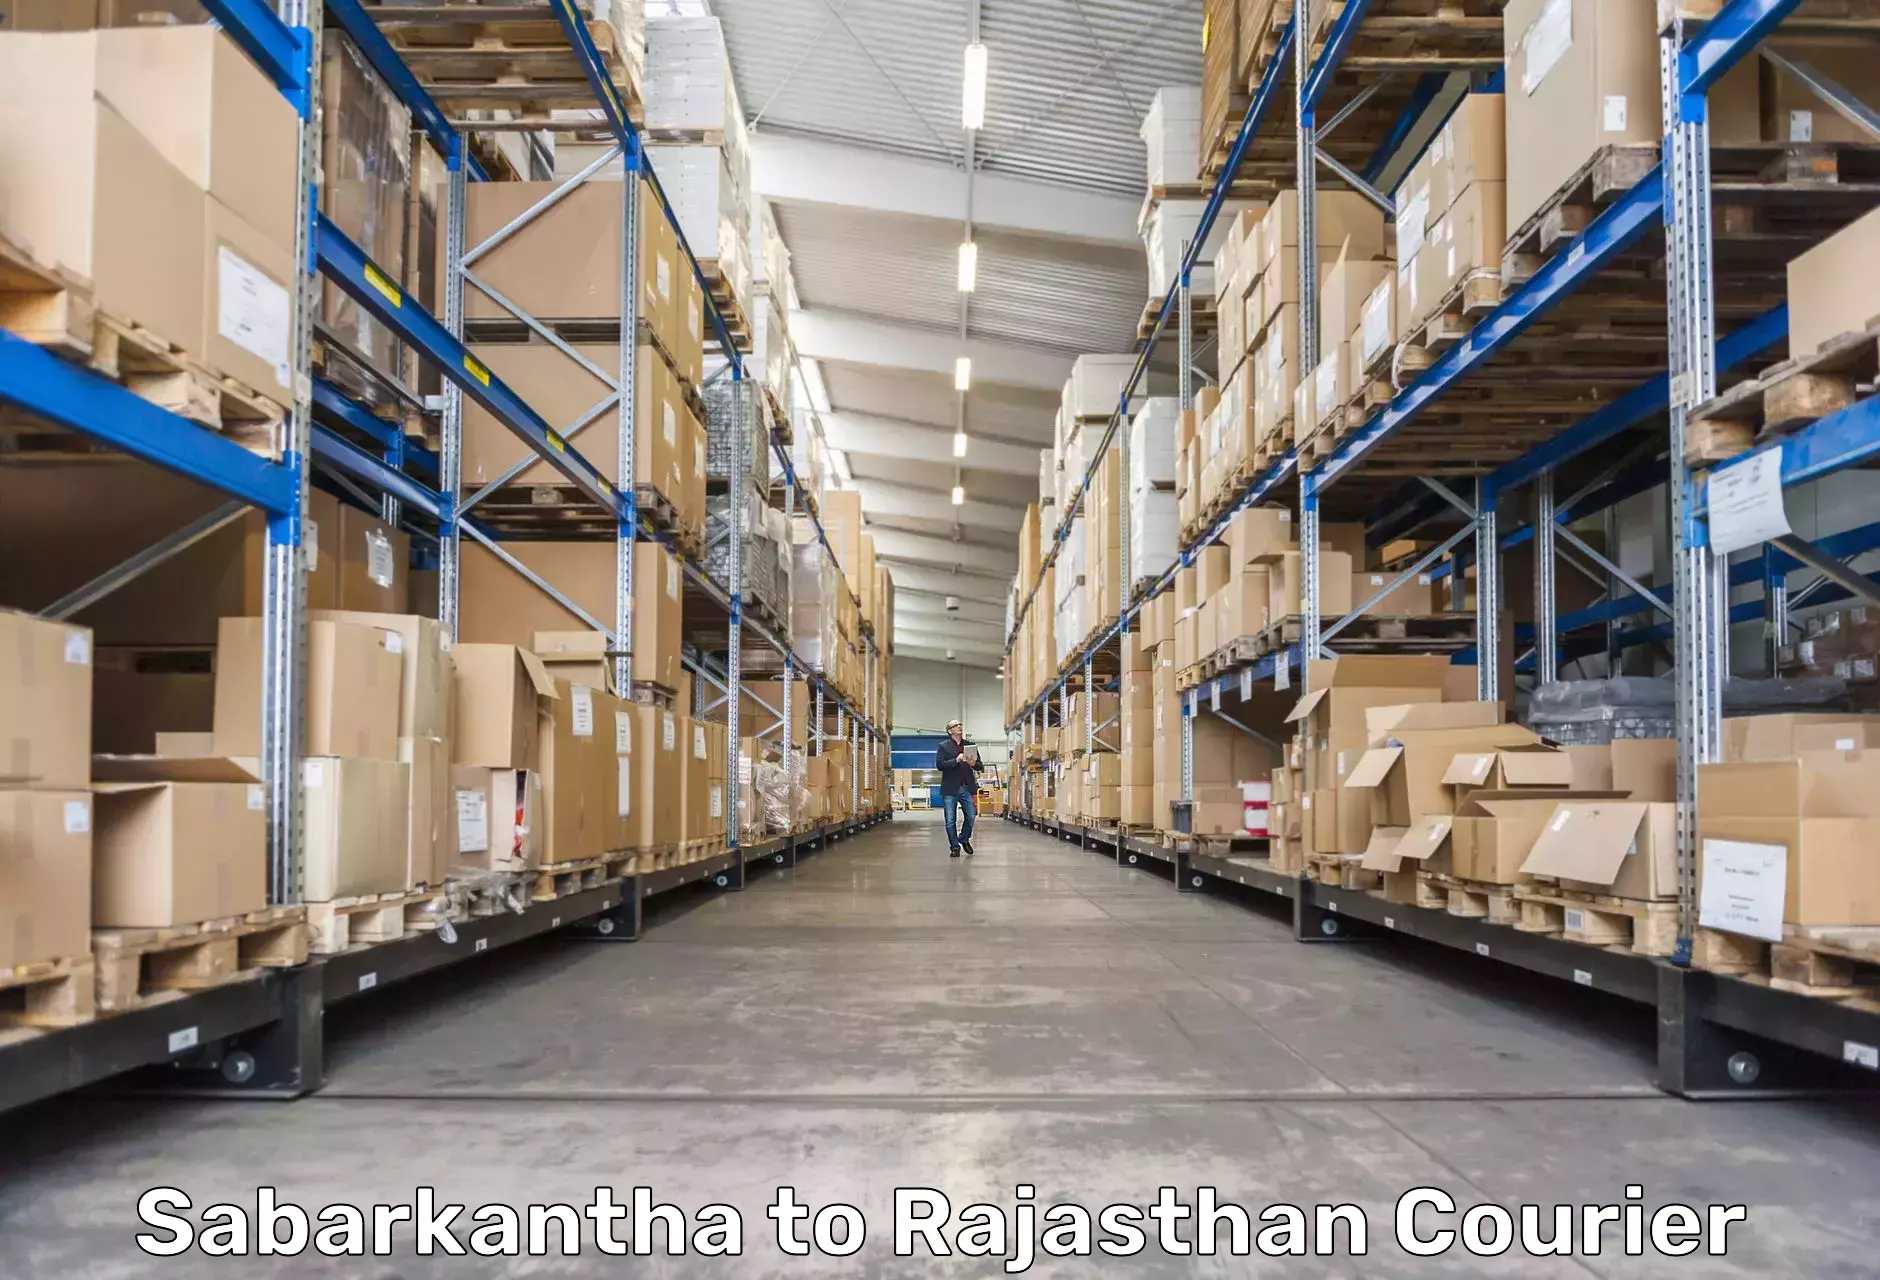 International parcel service Sabarkantha to Yathalakunta